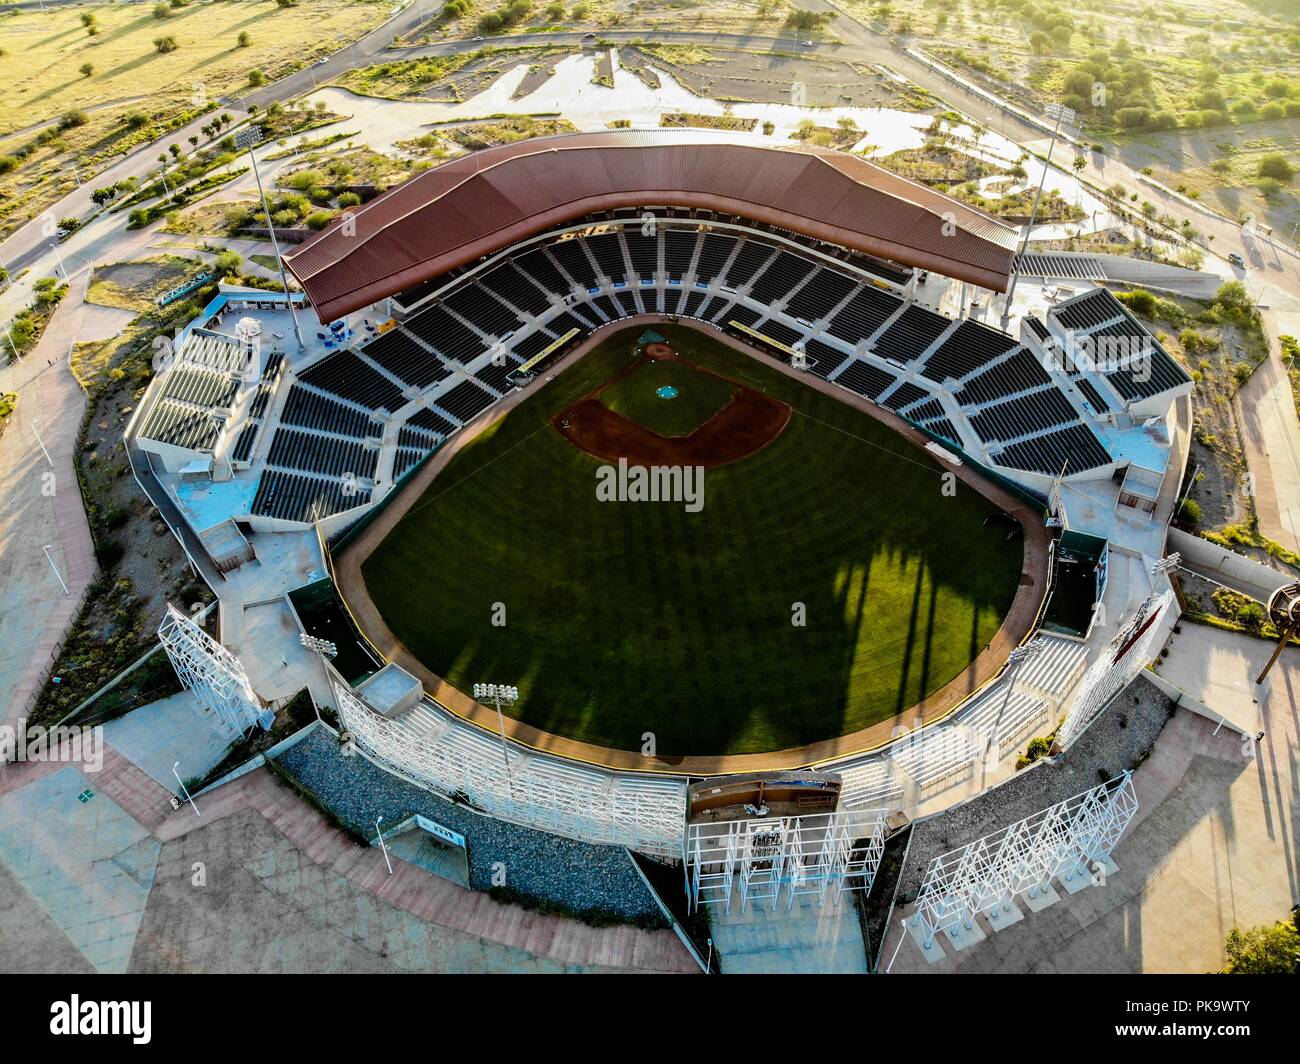 Vista Aerea de Estadio Sonora. Estadio de beisbol. (Photo: Luis